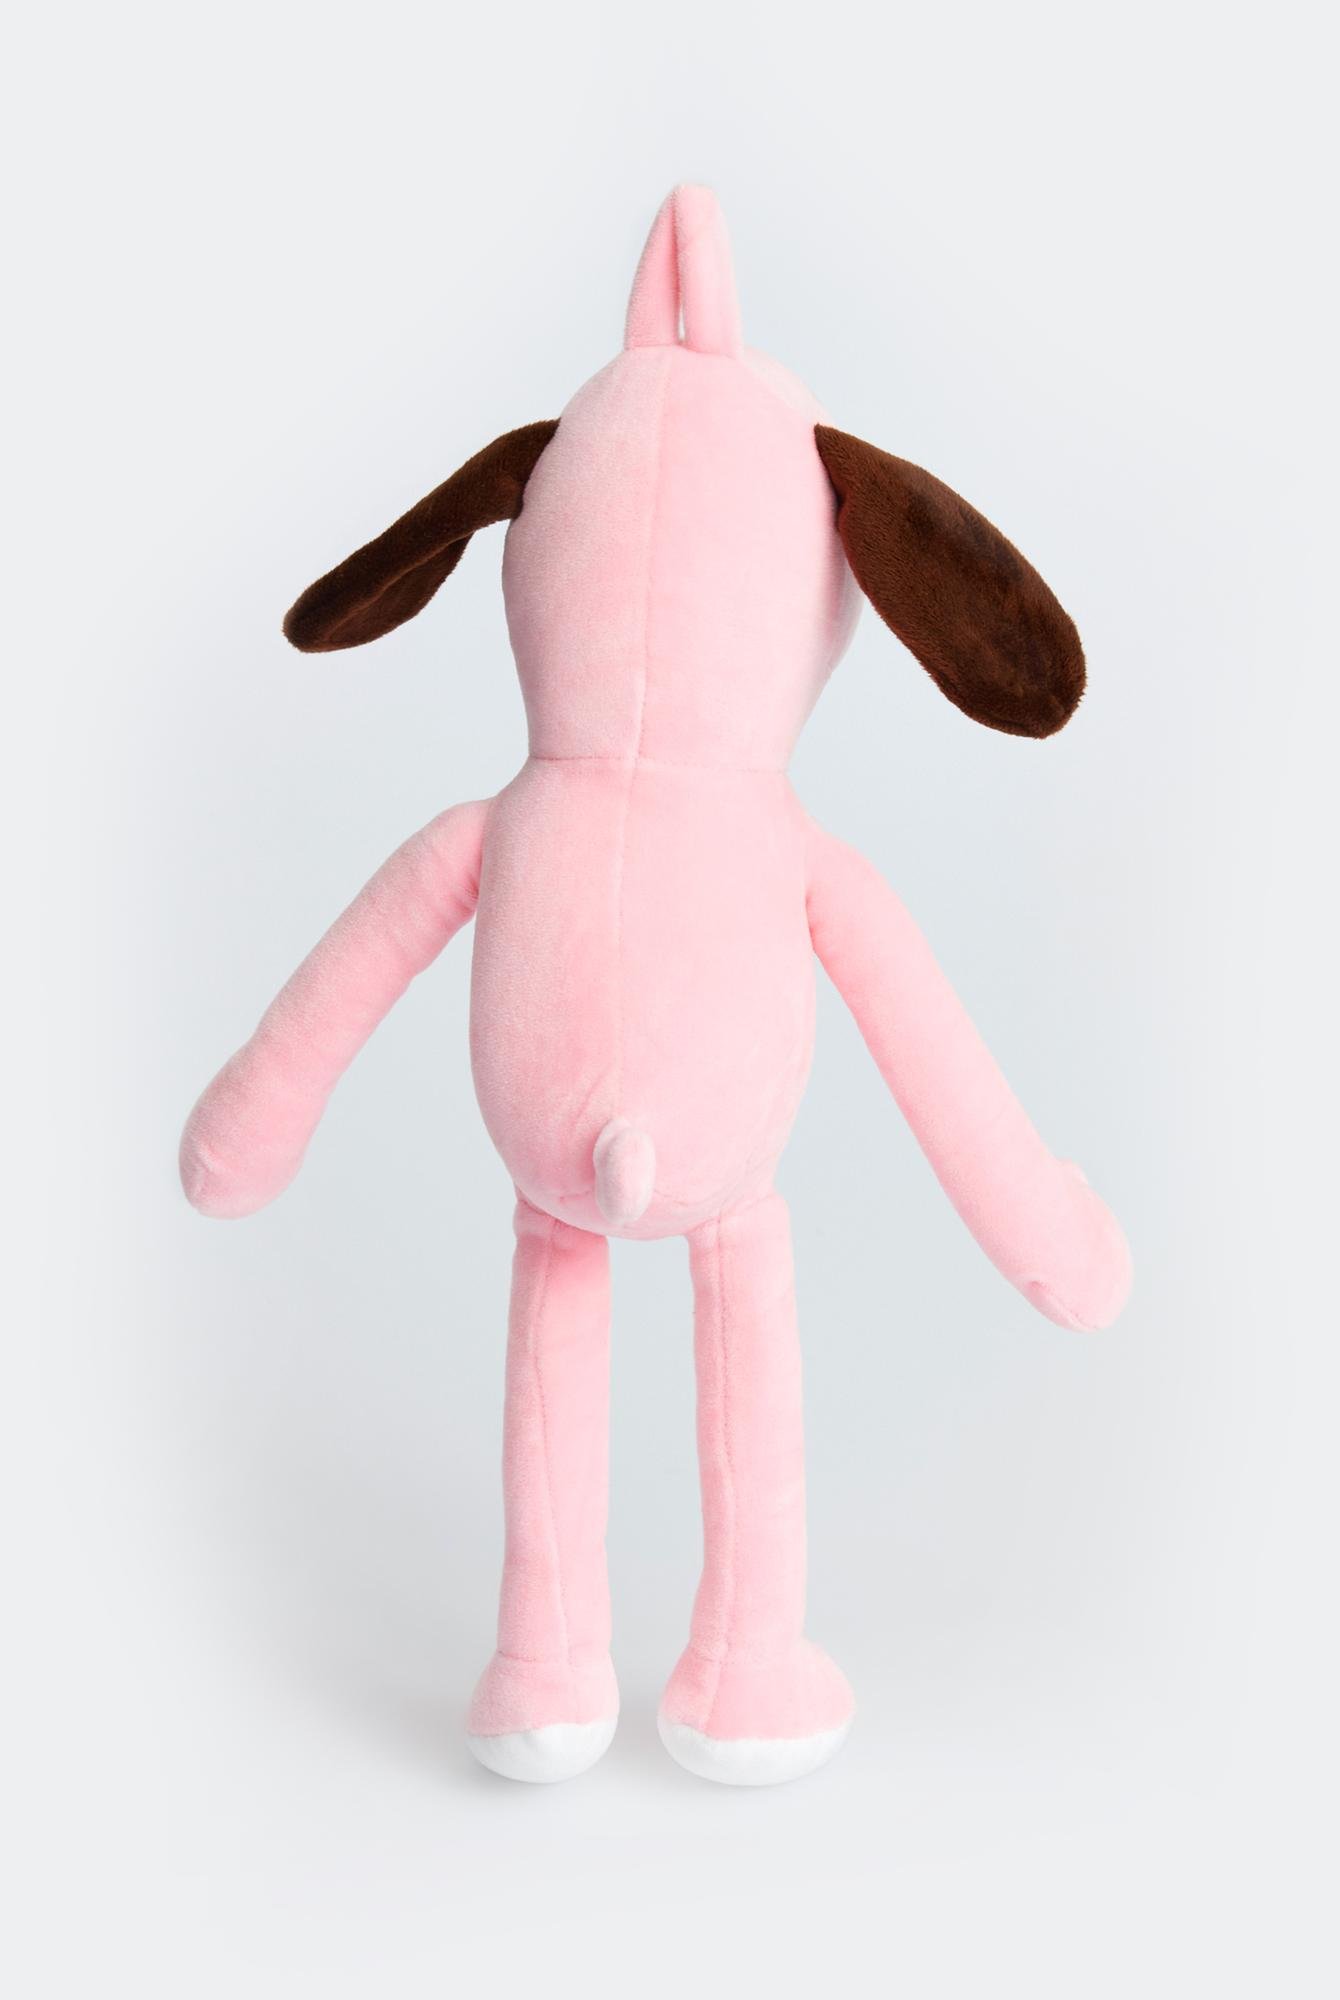  Ecrou Uzun Bacaklı Köpek Temalı Yastık Pelüş Maskot Oyuncak  Pembe 30 cm